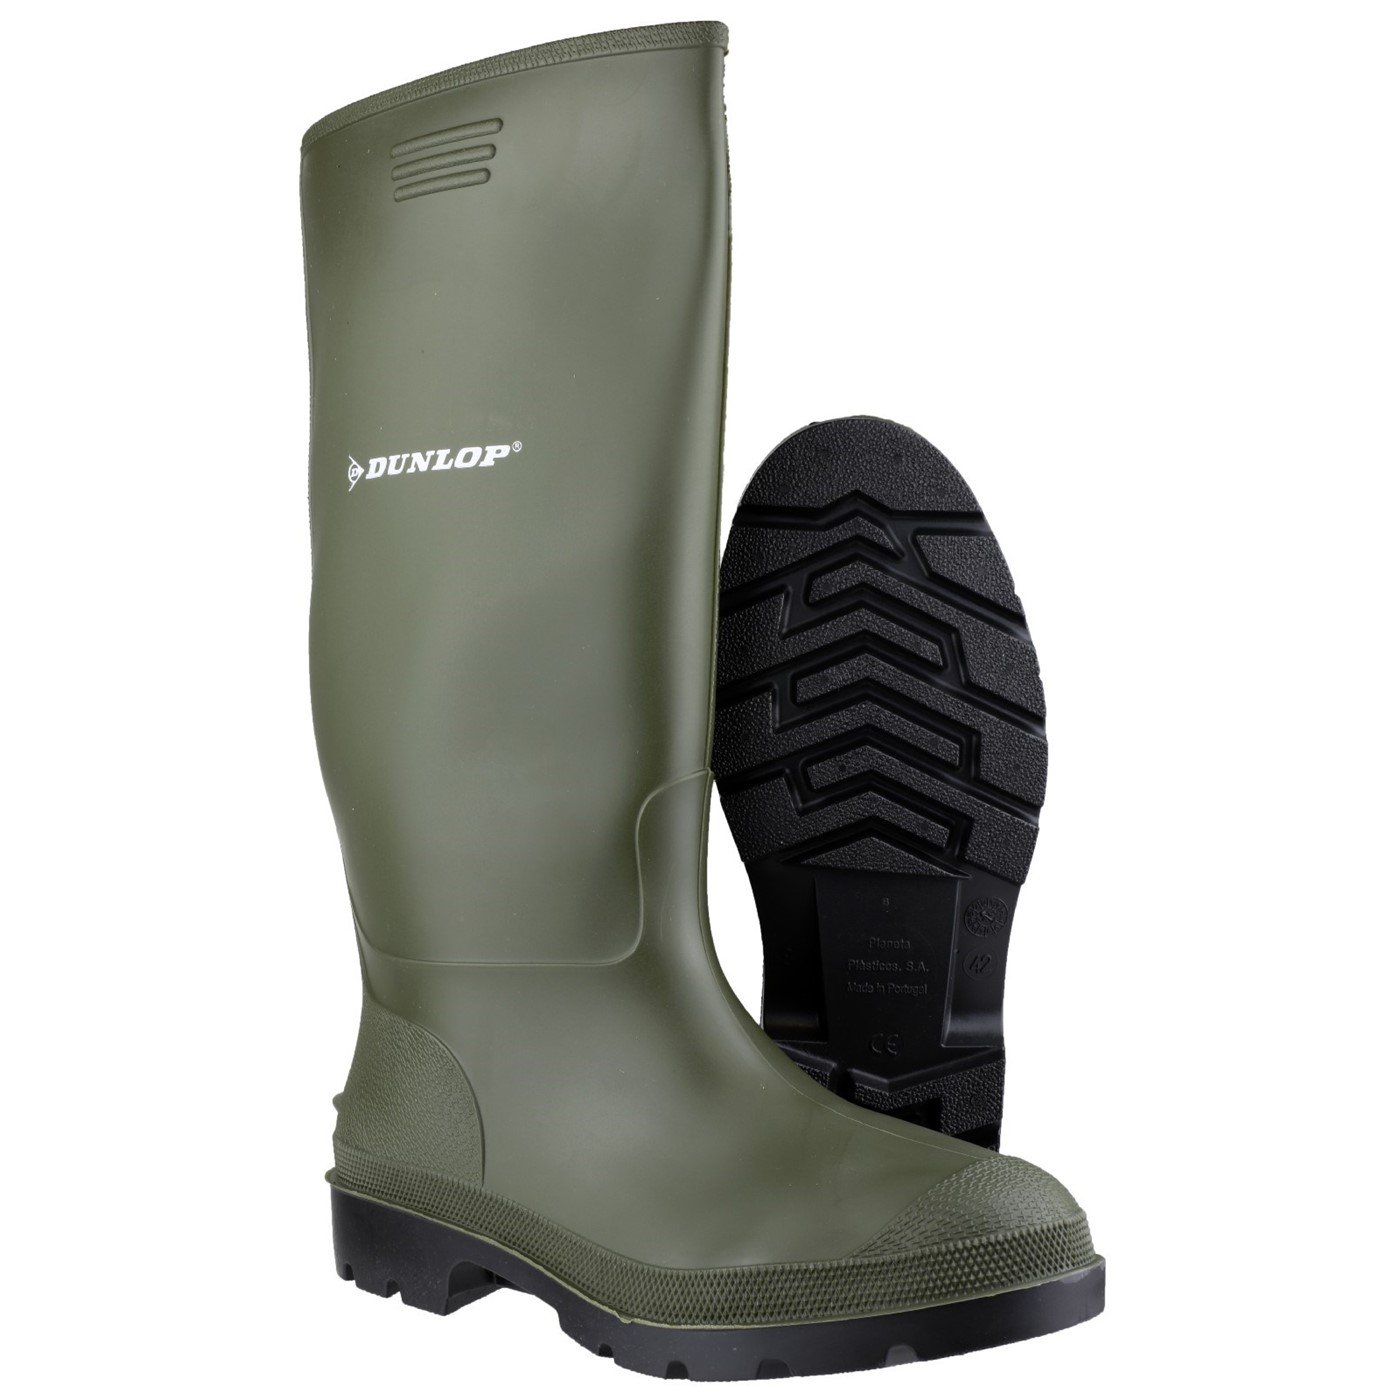 Dunlop Pricemaster Boot, Green, Size 4(37)